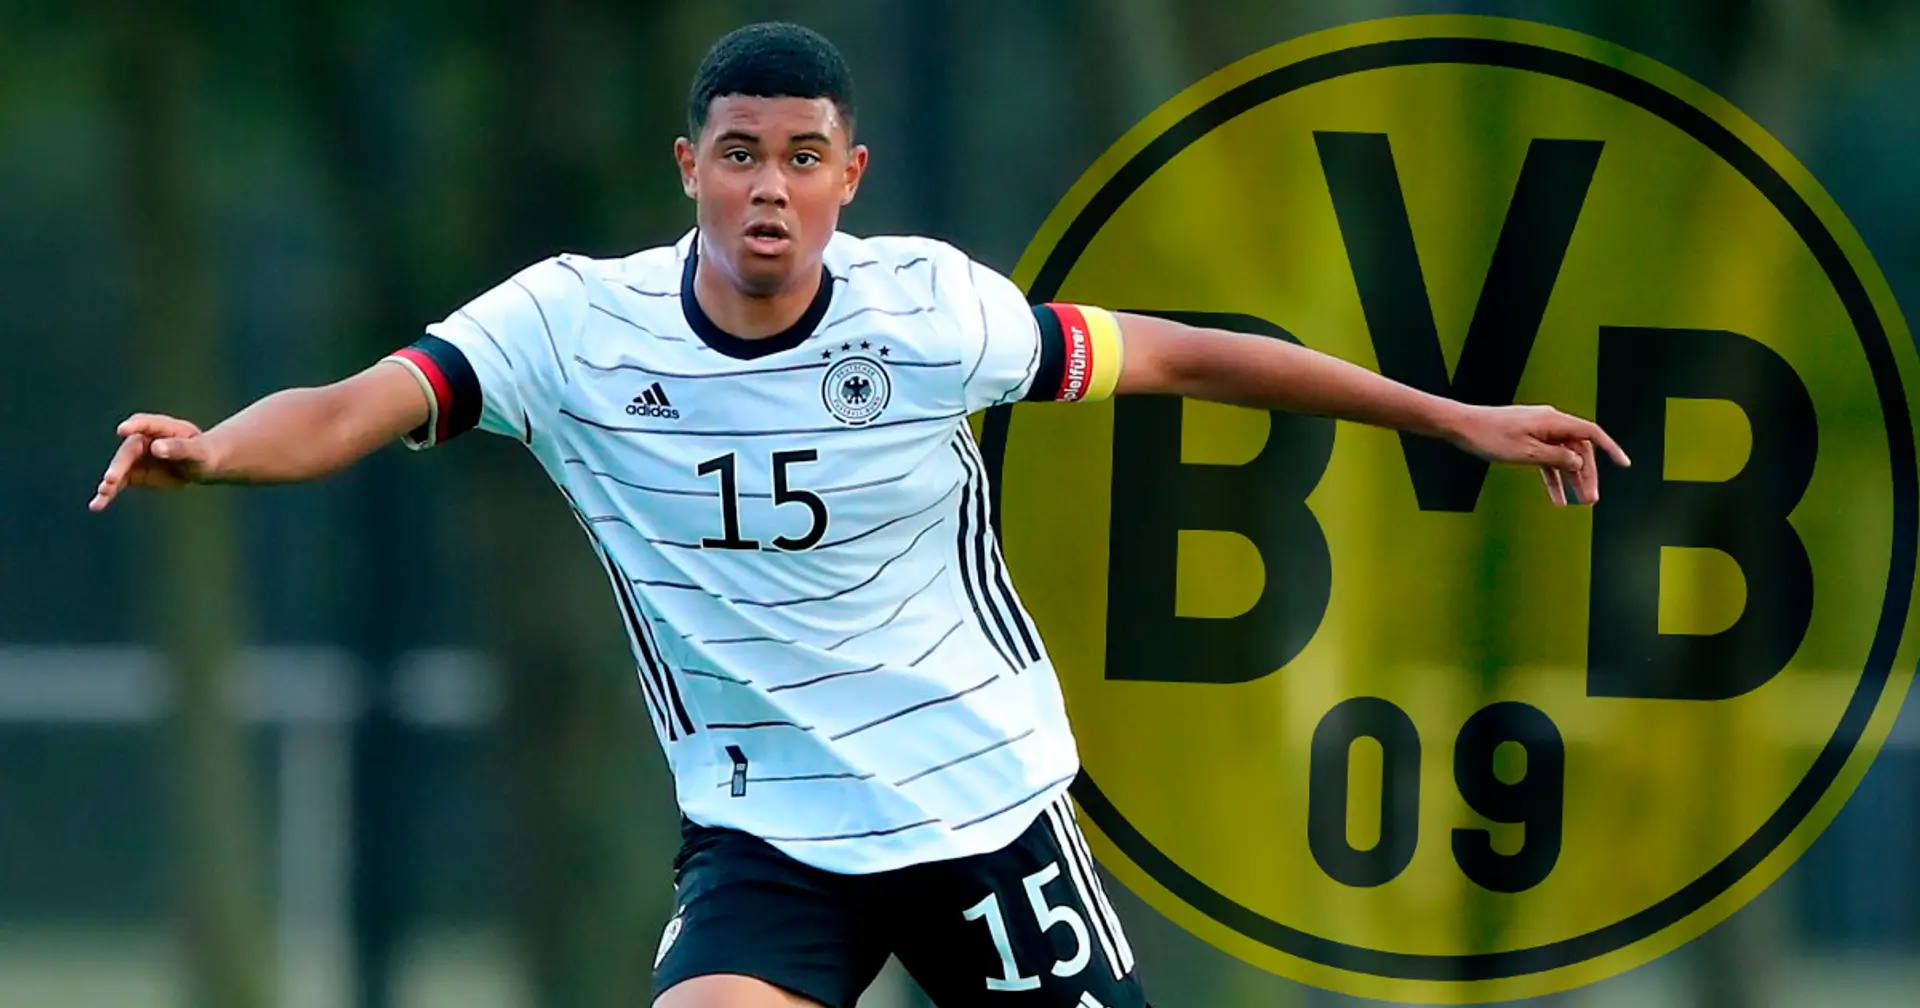 Bestätigt: BVB nimmt Hamburg-Jugendspieler und DFB-U17-Kapitän Leonardo Posadas unter Vertrag!